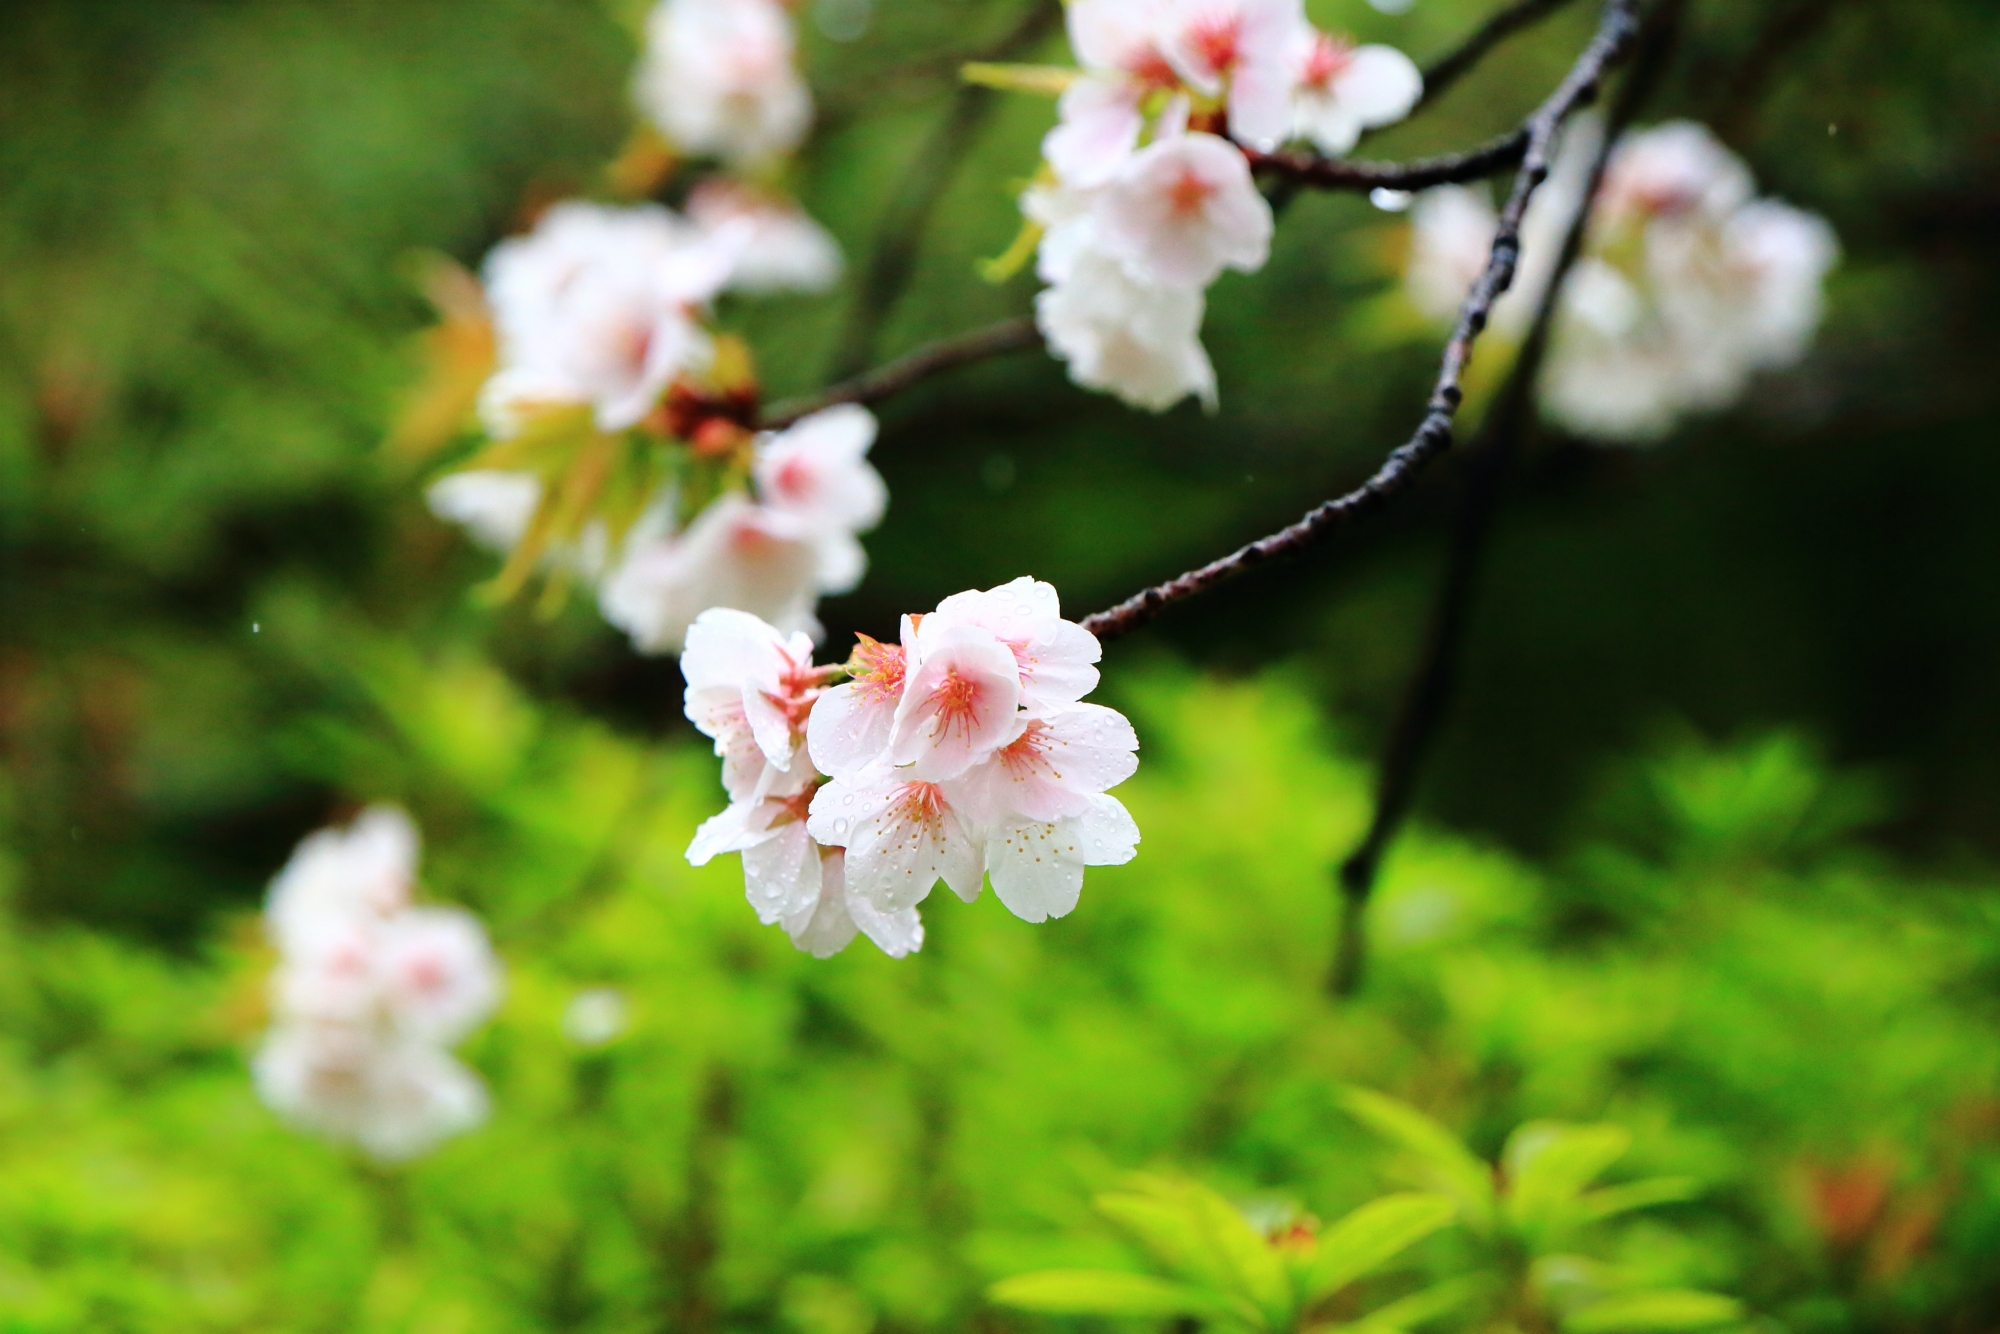 背景の緑に映える雨で華やぐ白い桜